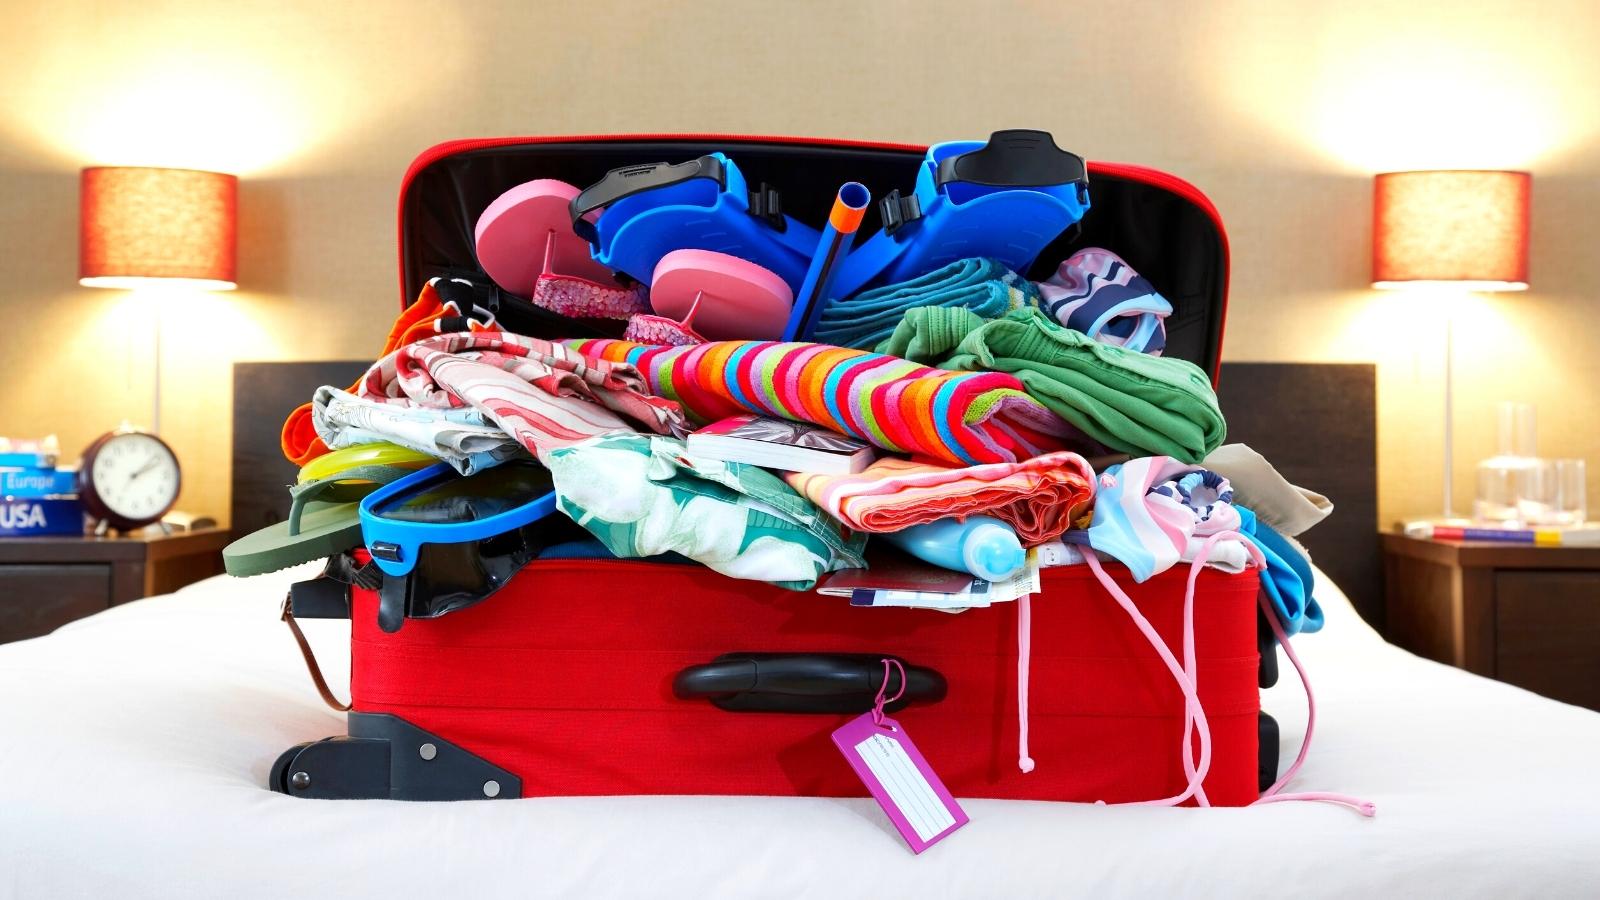 30 Sacchetti per Vestiti Plastica Richiudibili Valigia Viaggio per Riporre  Biancheria Sacchetti Viaggio Organizer